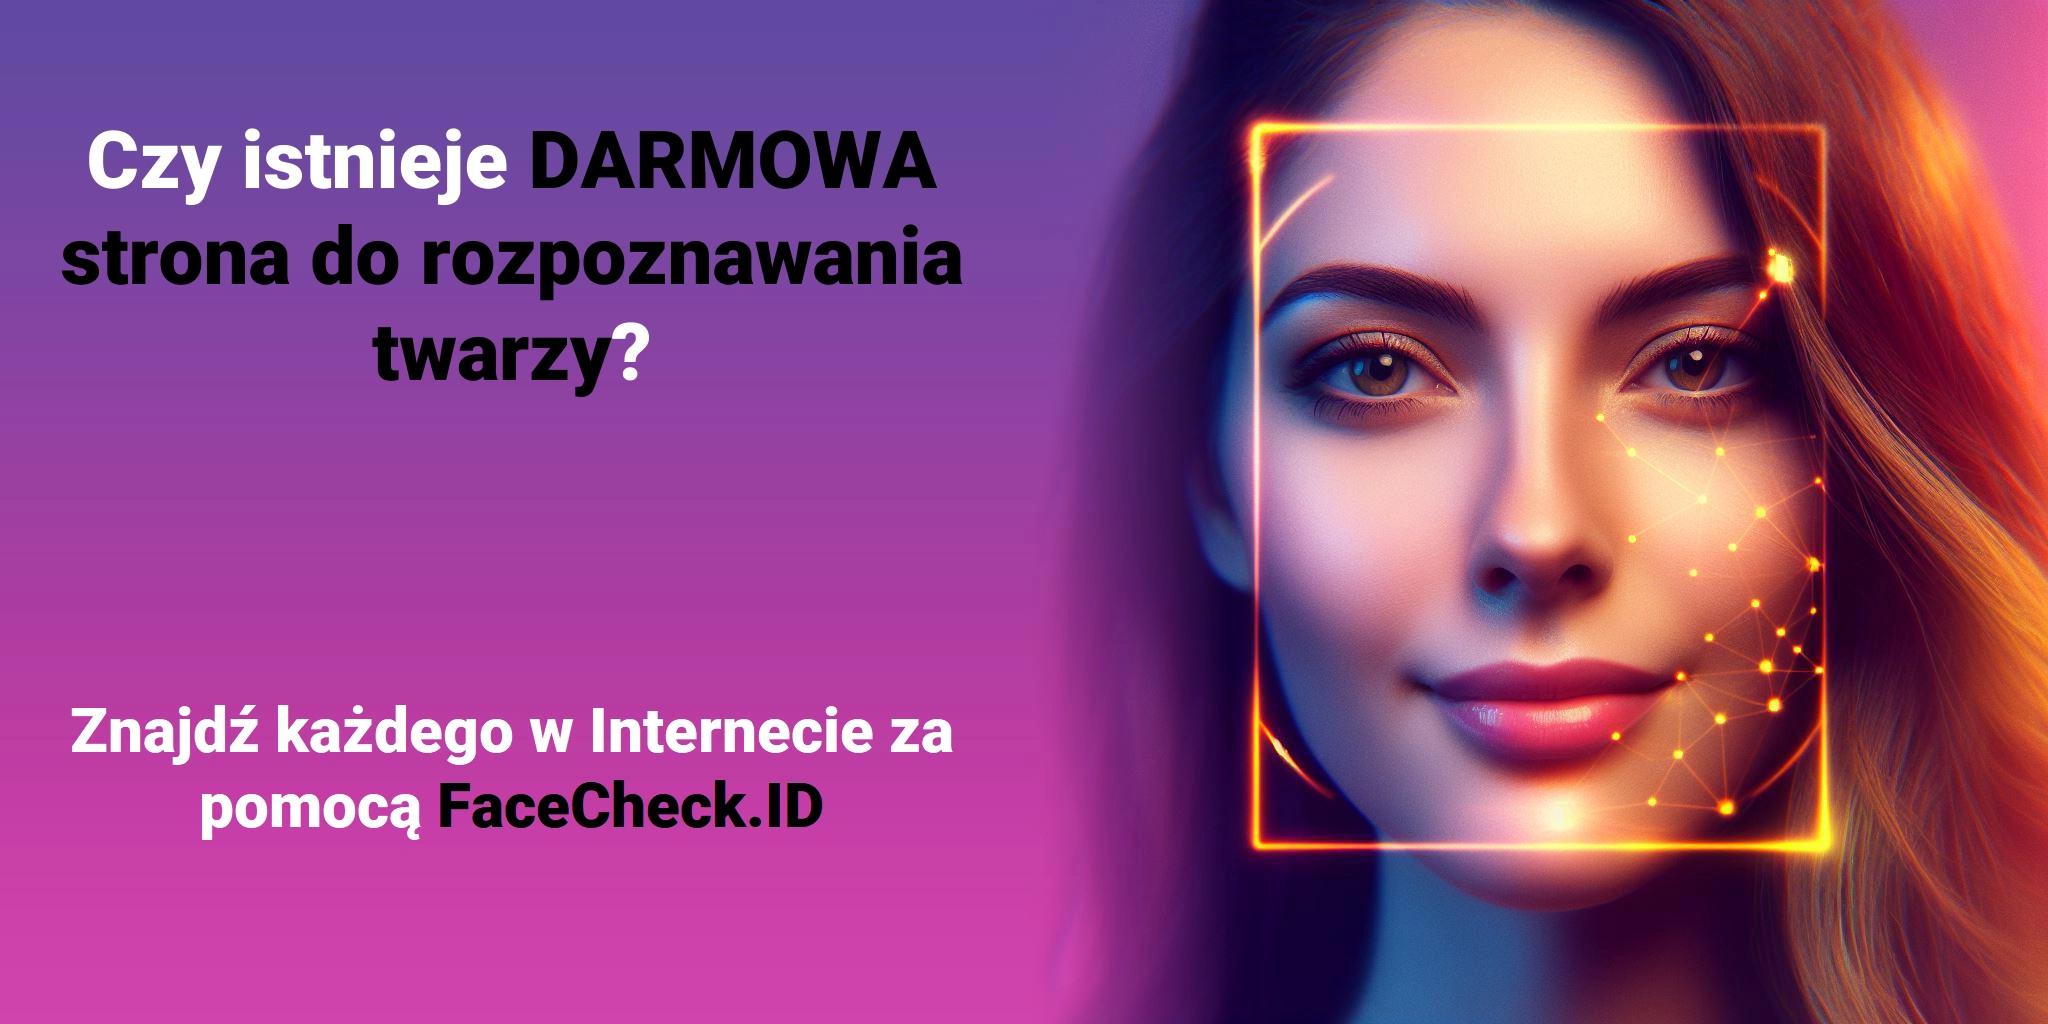 Czy istnieje DARMOWA strona do rozpoznawania twarzy? Znajdź każdego w Internecie za pomocą FaceCheck.ID